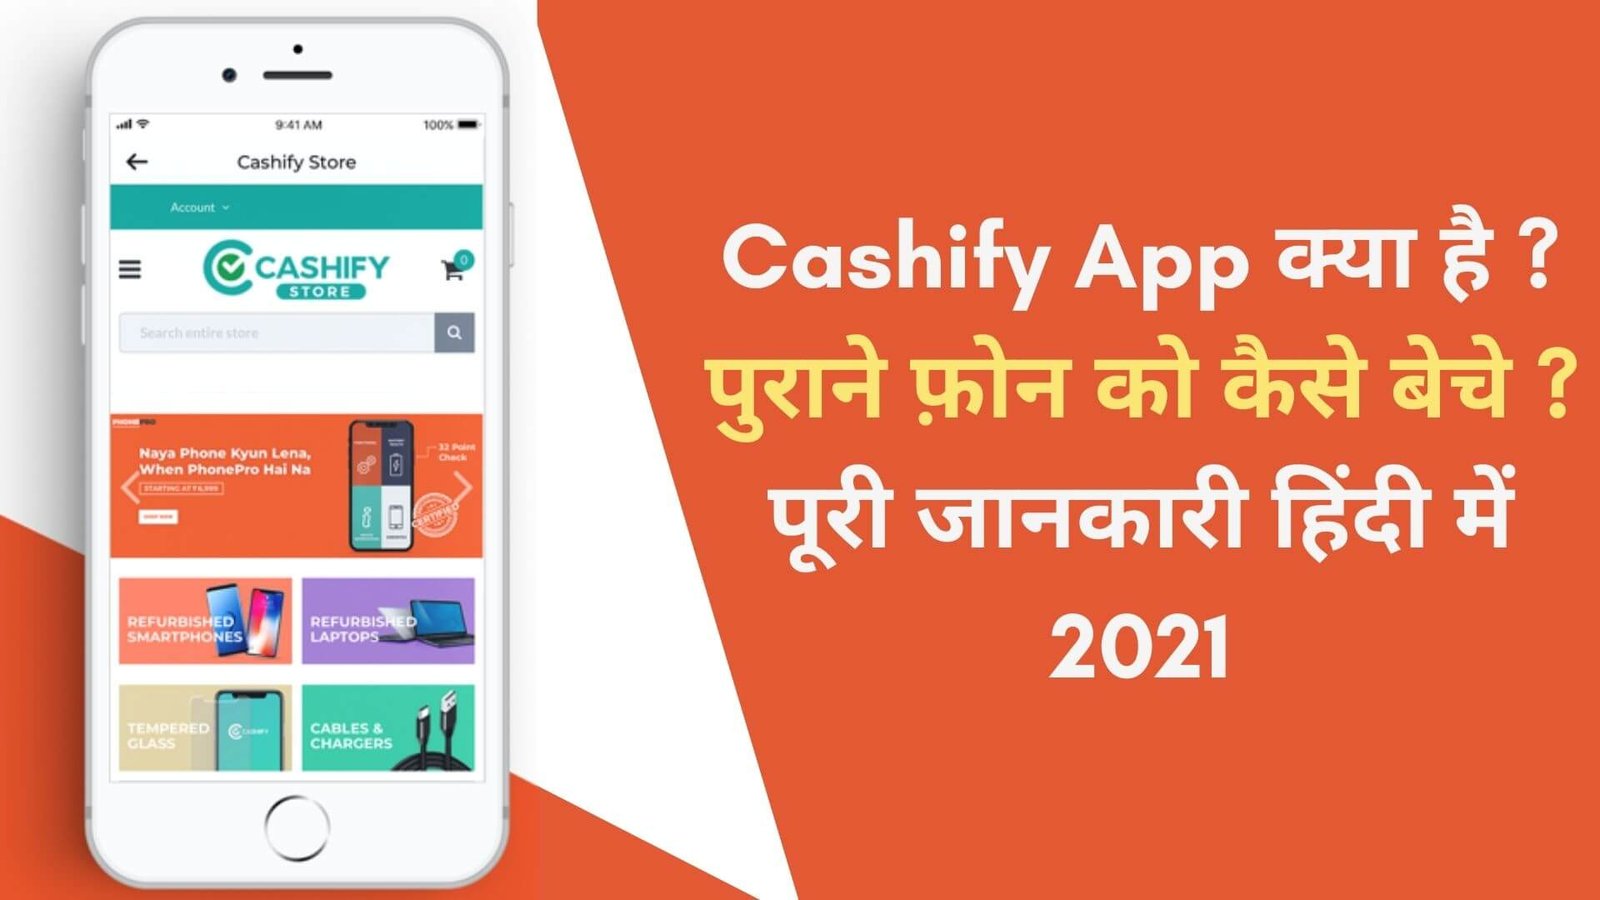 Cashify App kya hai